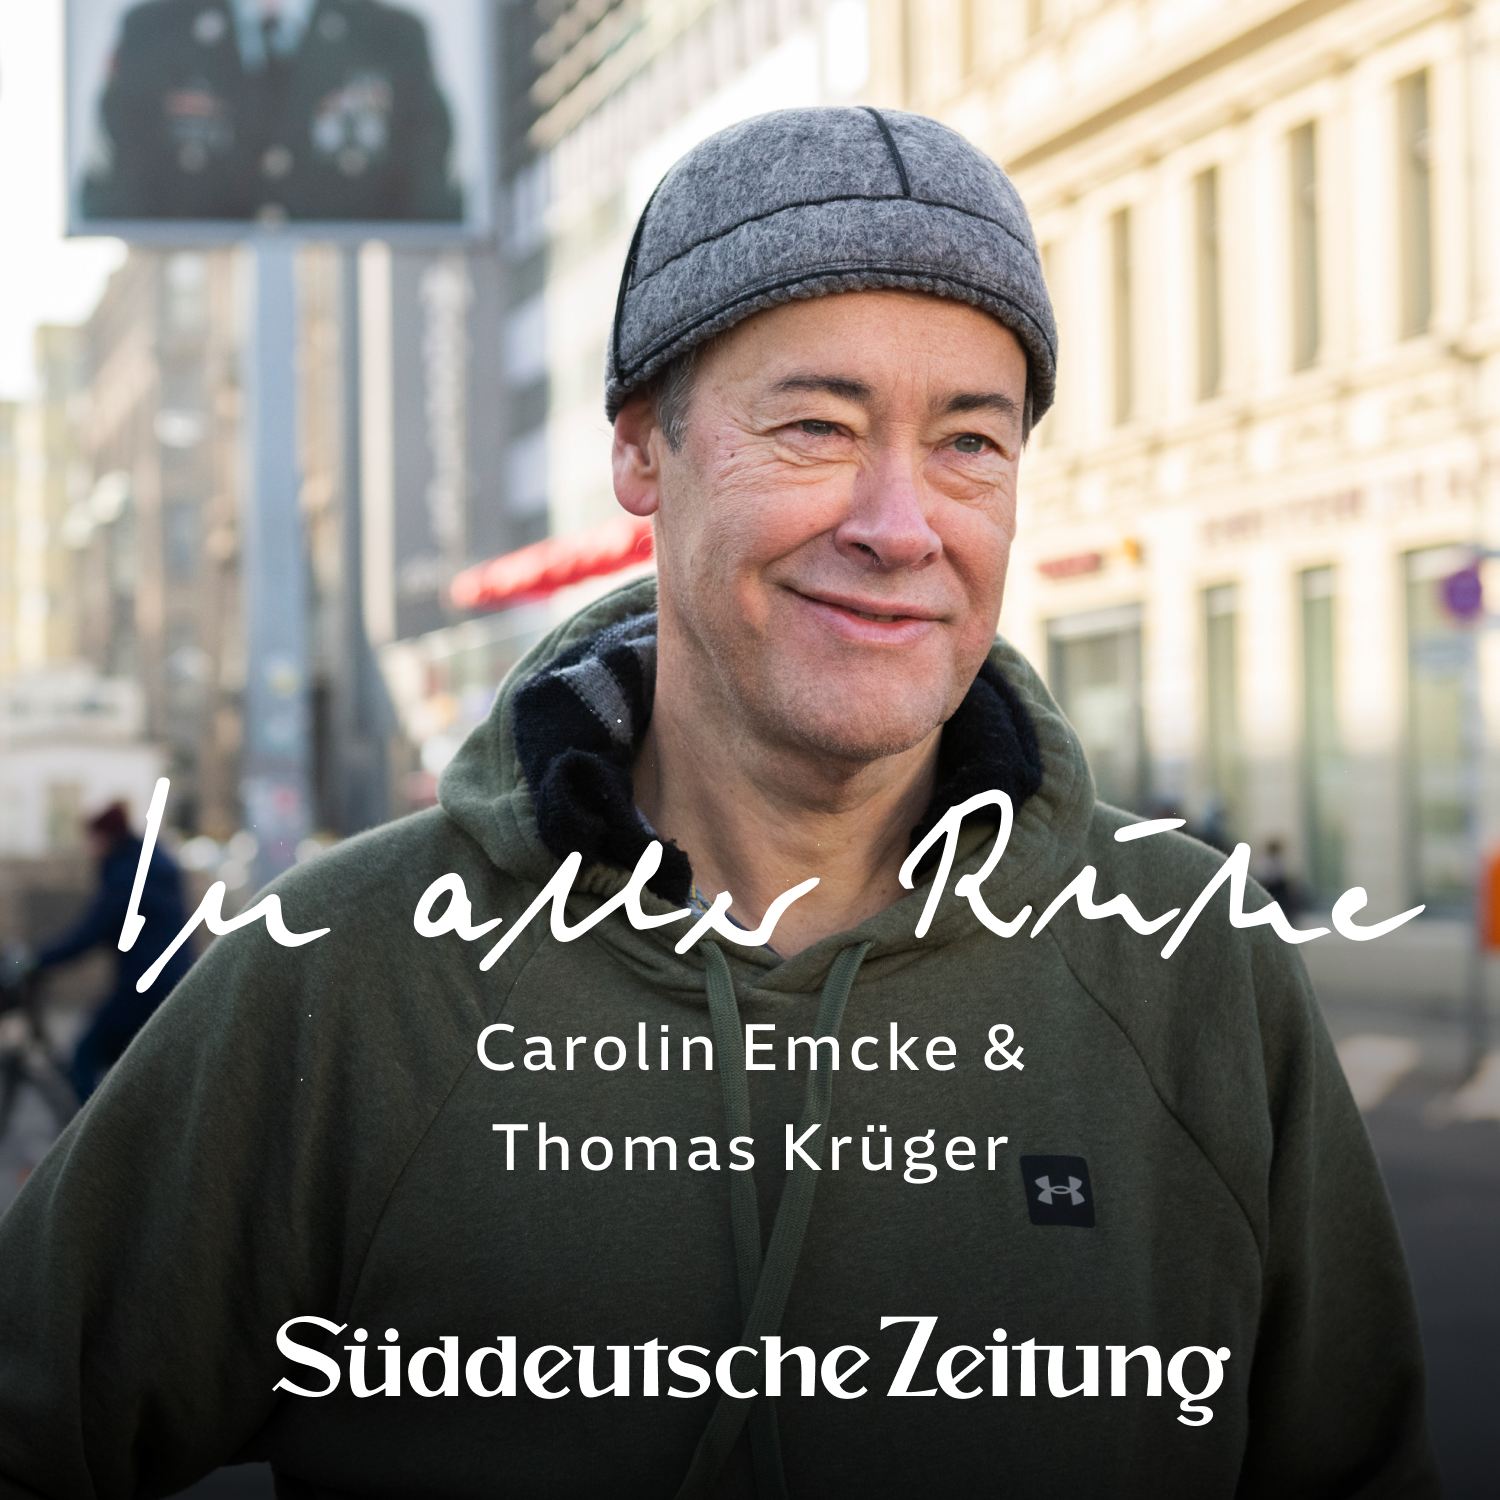 „Kollektive Verletzung“ – Thomas Krüger bei Carolin Emcke über die Nachwendejahre in Ostdeutschland